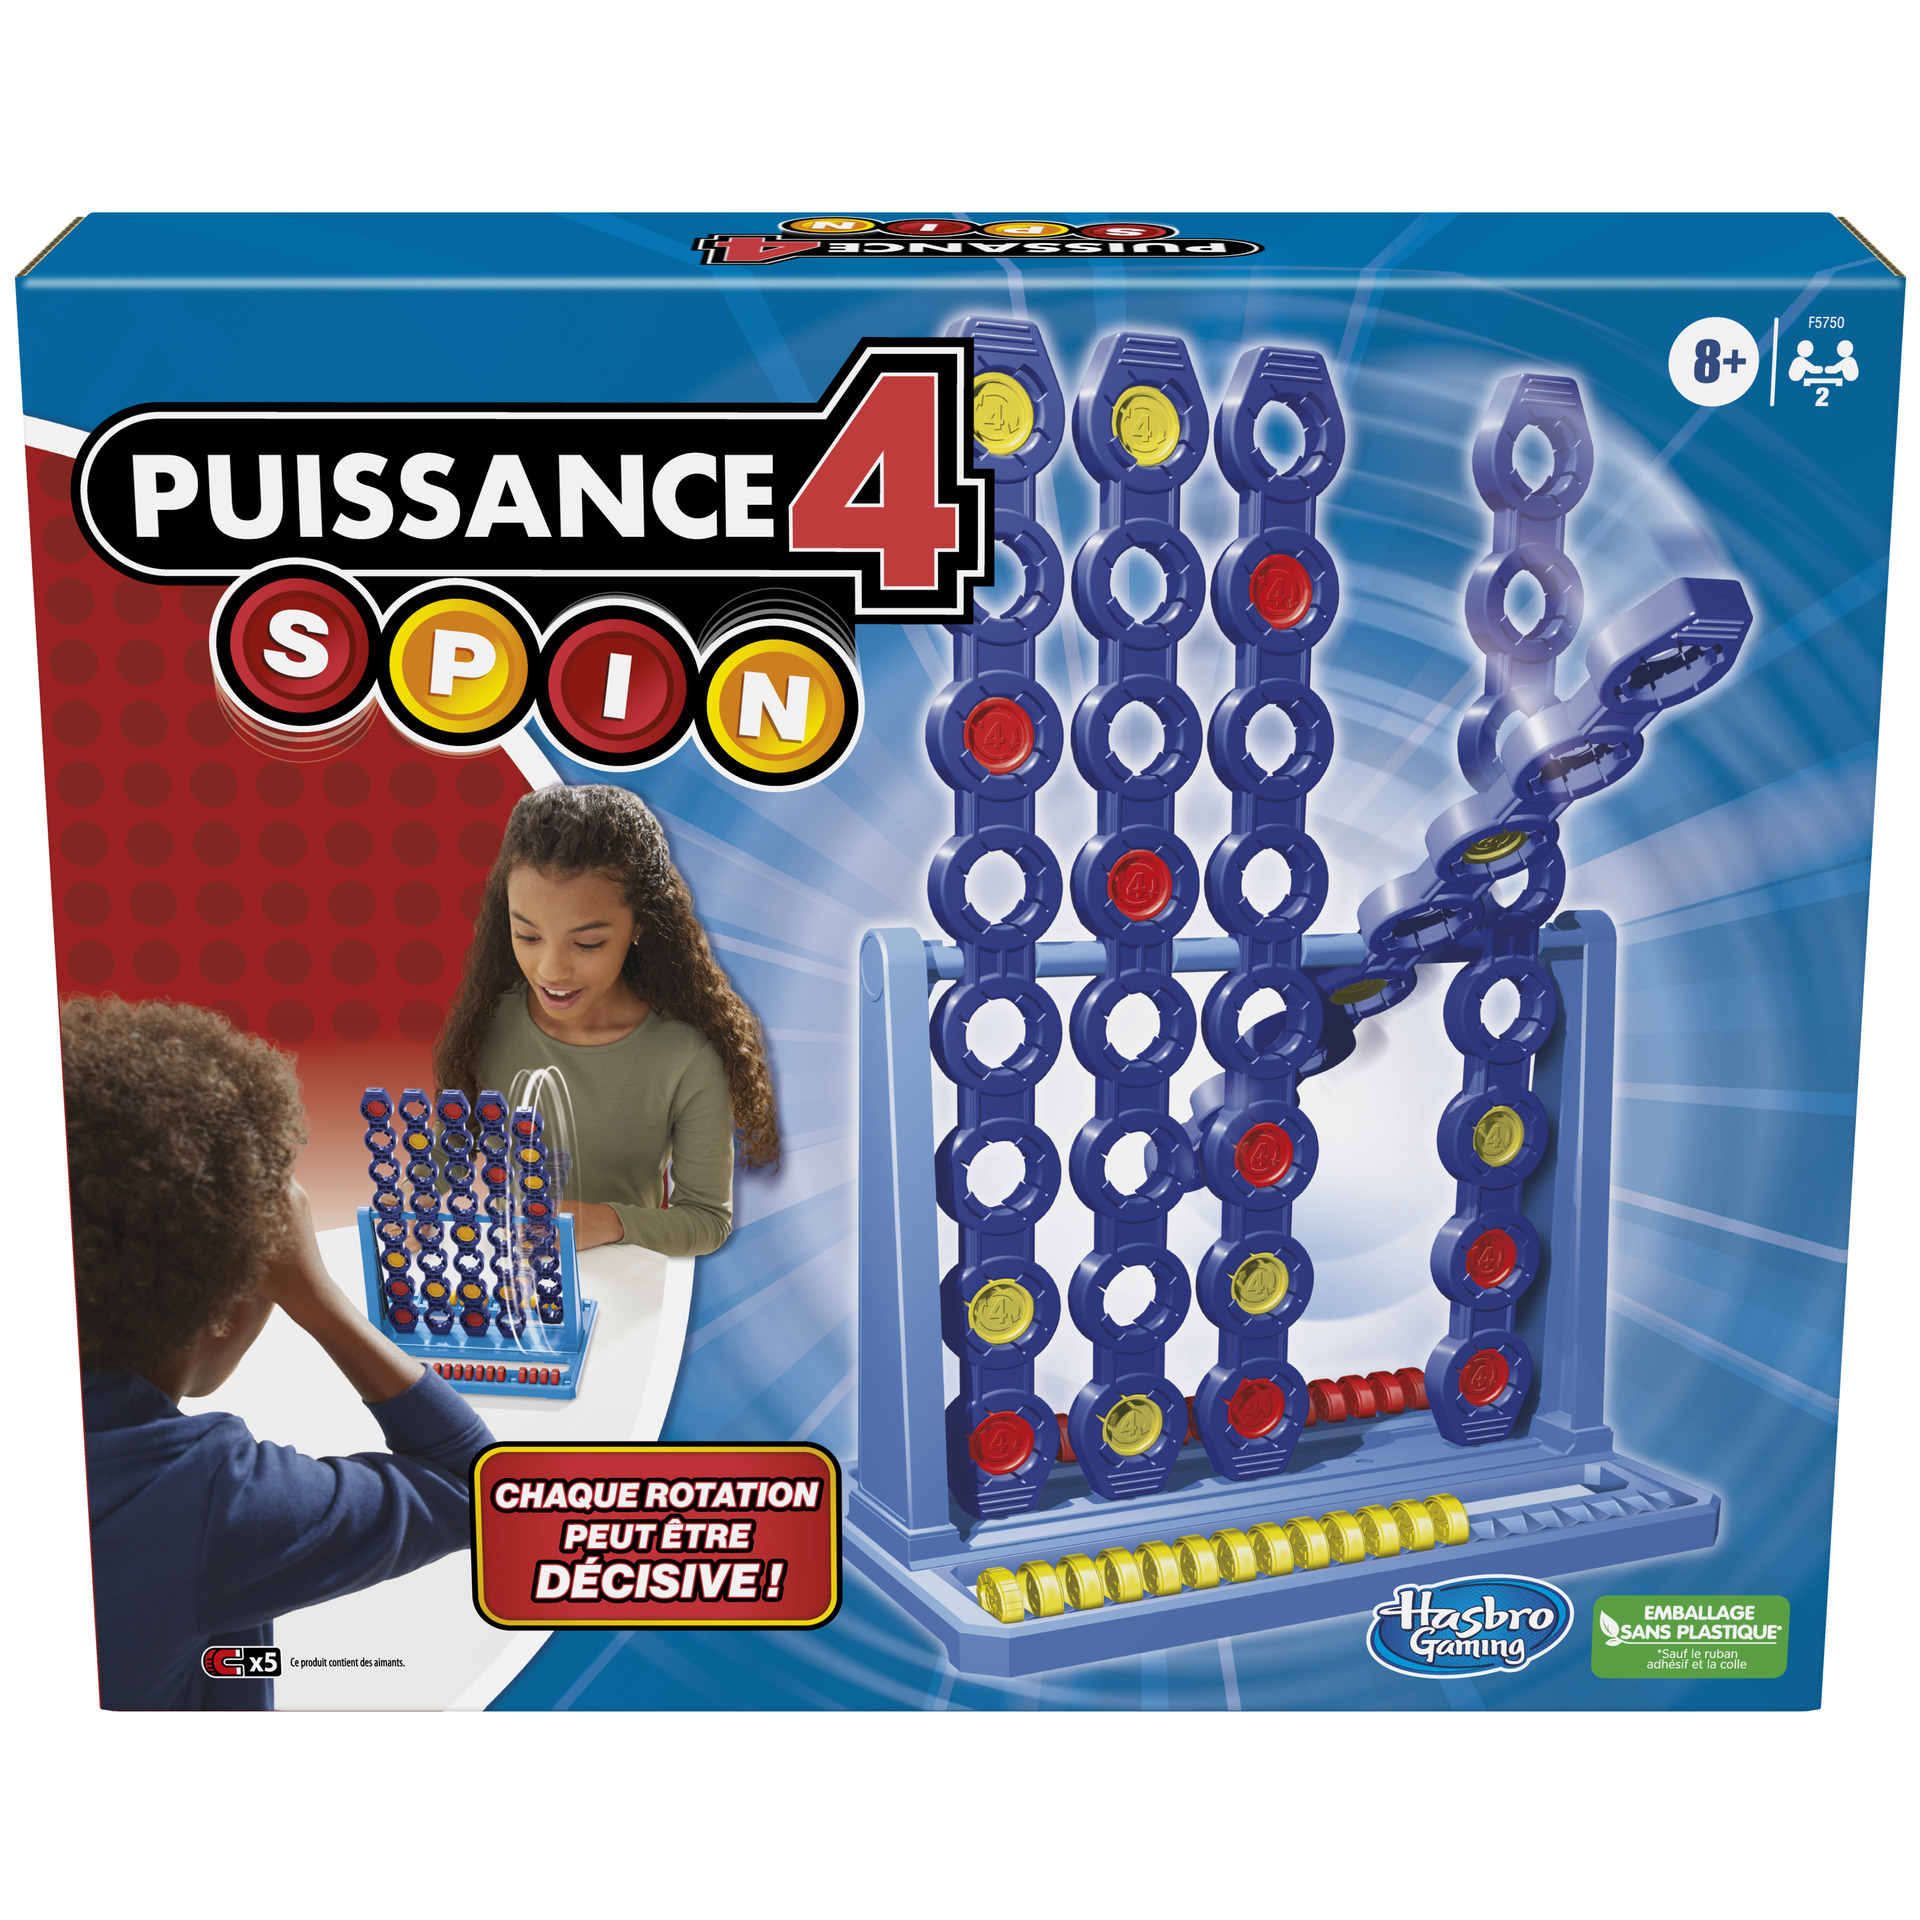 Puissance 4 Spin avec grille tournante, jeu de sociéré, pour 2 joueurs,  pour enfants à partir de 8 ans au meilleur prix